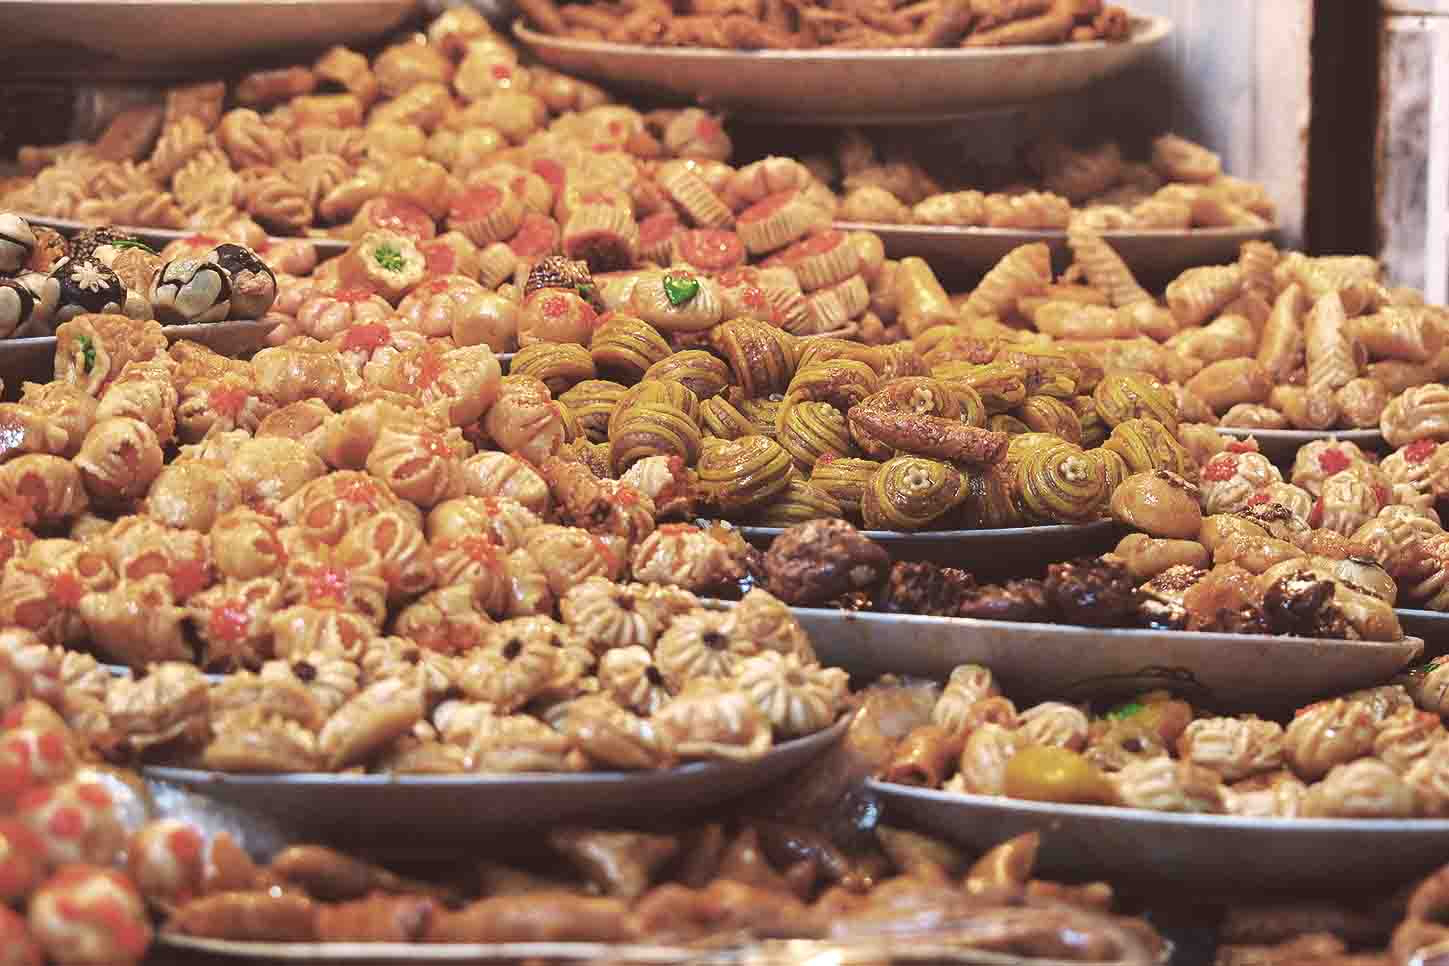 Les plats marocains traditionnels sont essentiels à la cuisine du monde arabe